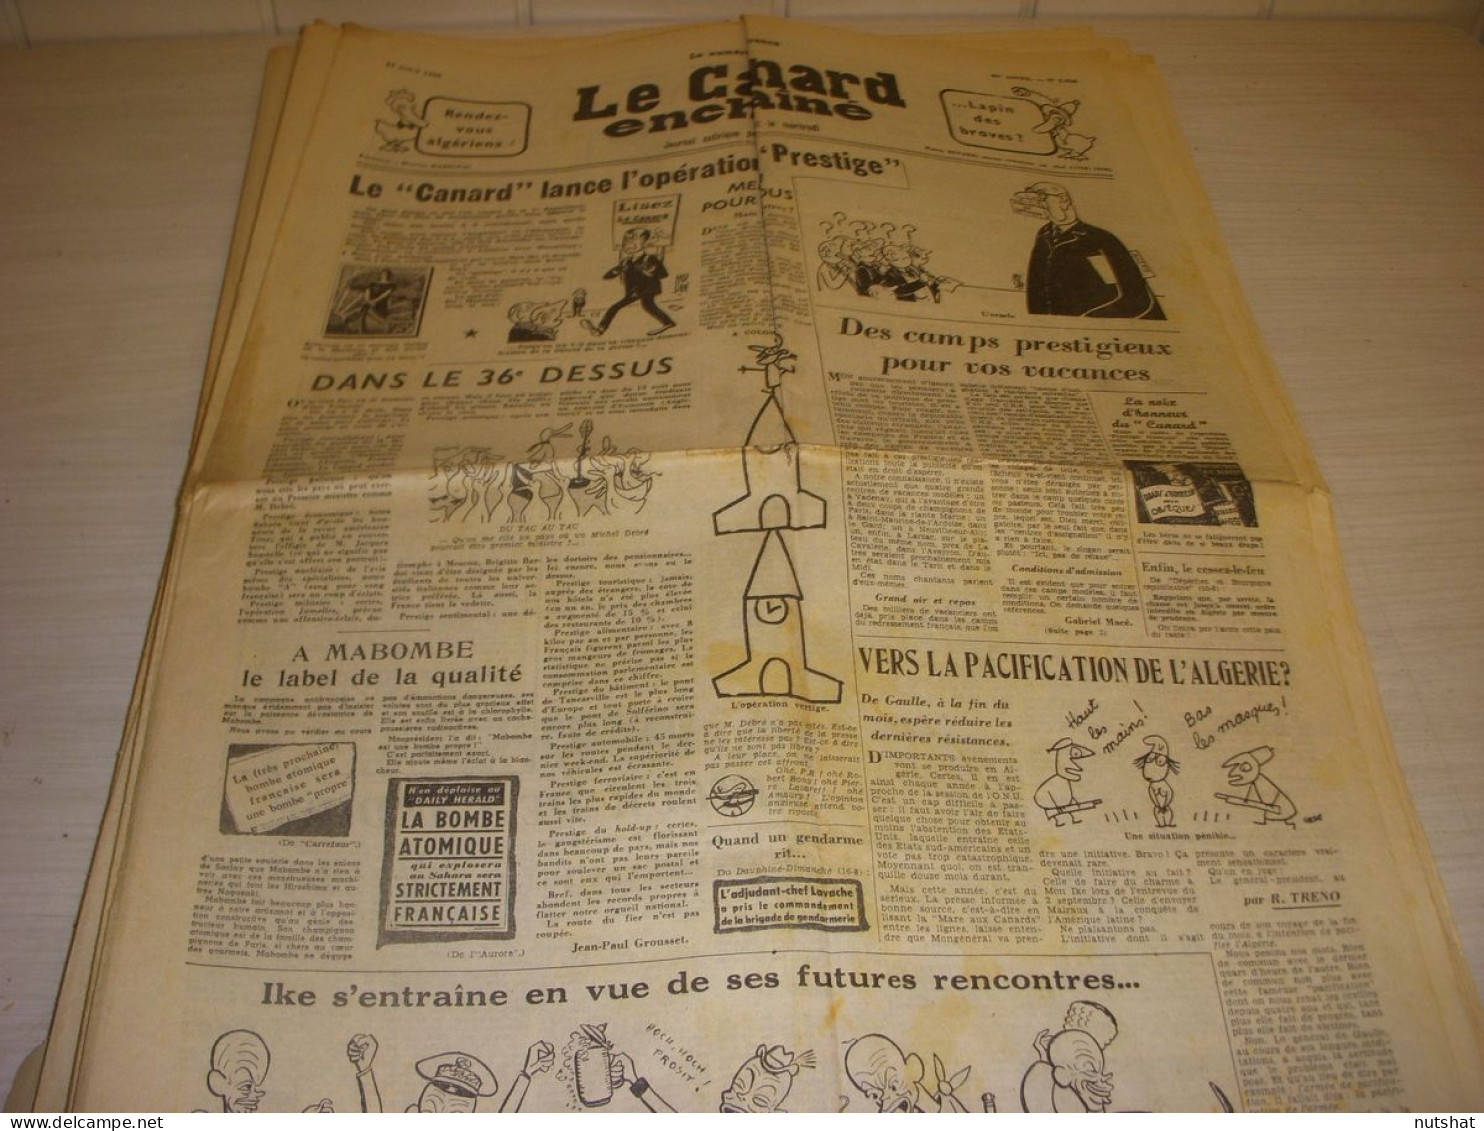 CANARD ENCHAINE 2026 19.08.1959 Thierry MAULNIER PETAIN Jean Claude PASCAL - Politics